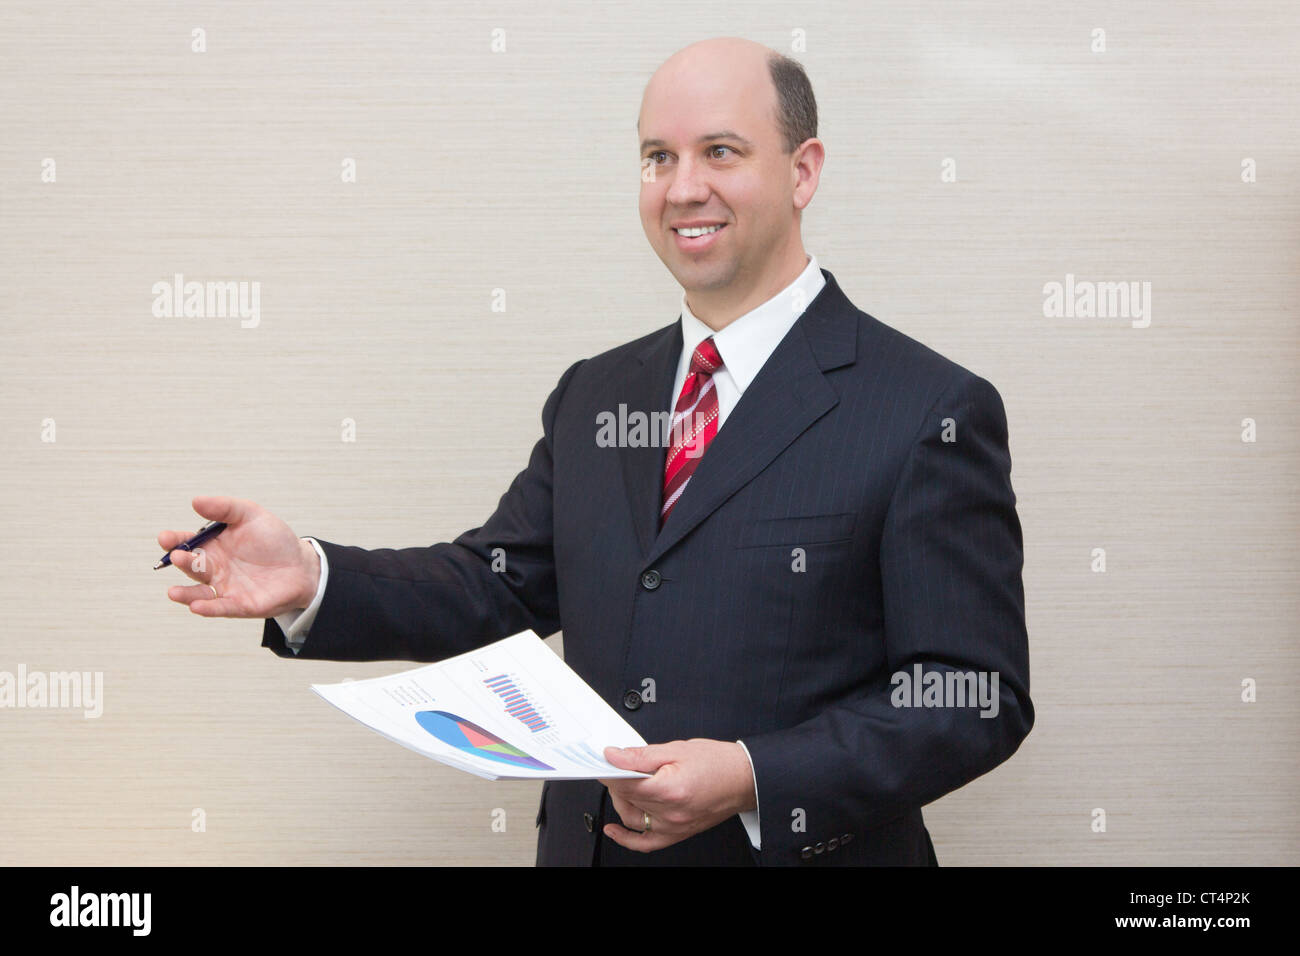 Smiling business man avec le document. Banque D'Images